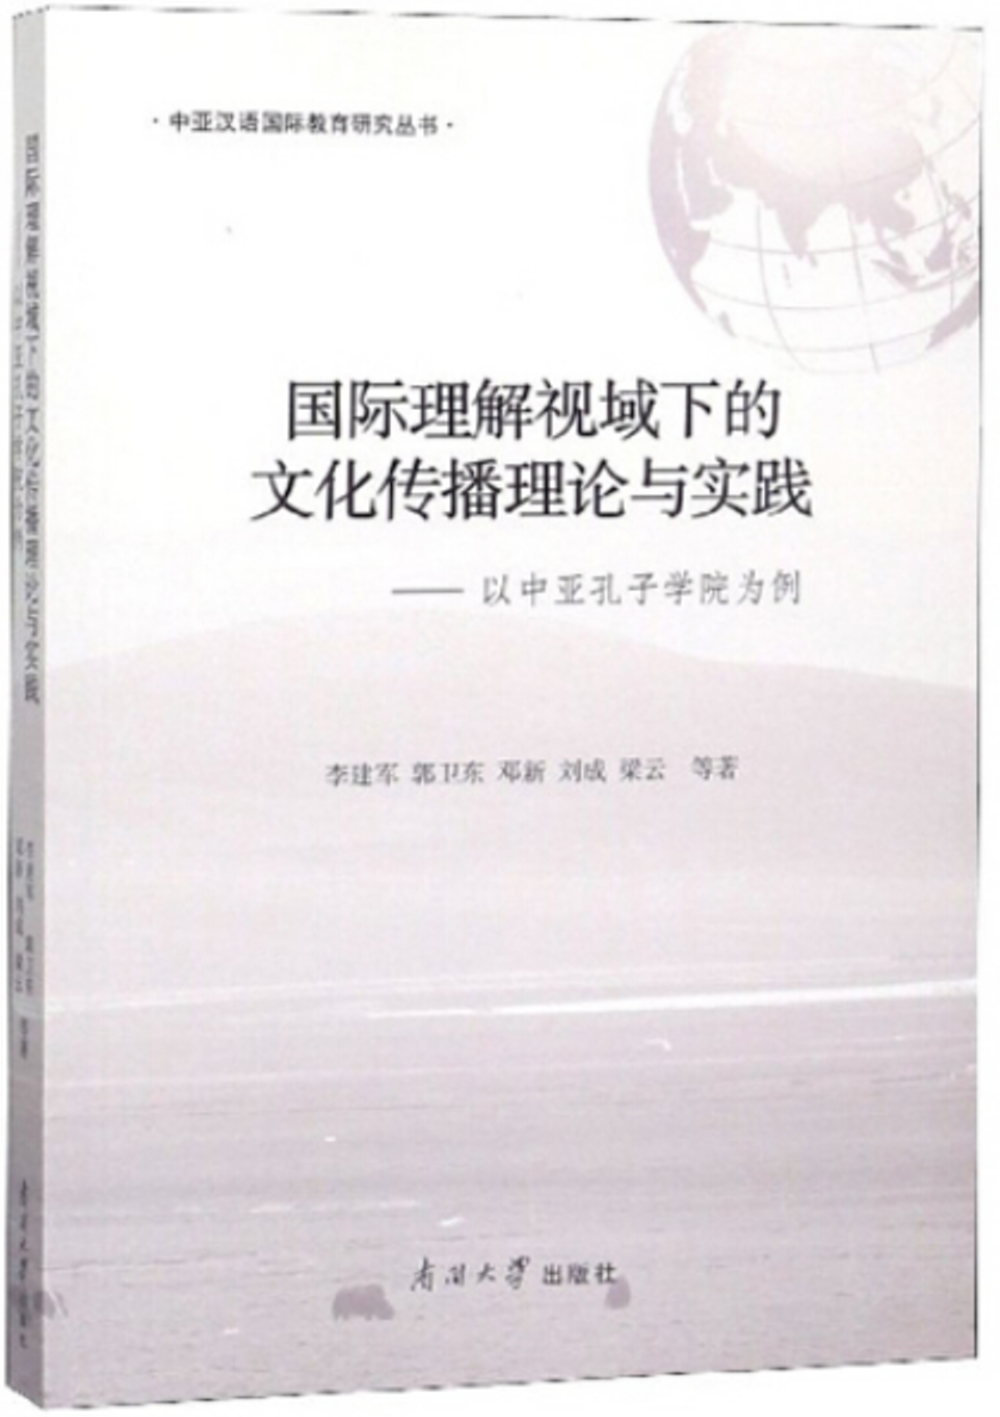 國際理解視域下的文化傳播理論與實踐-以中亞孔子學院為例